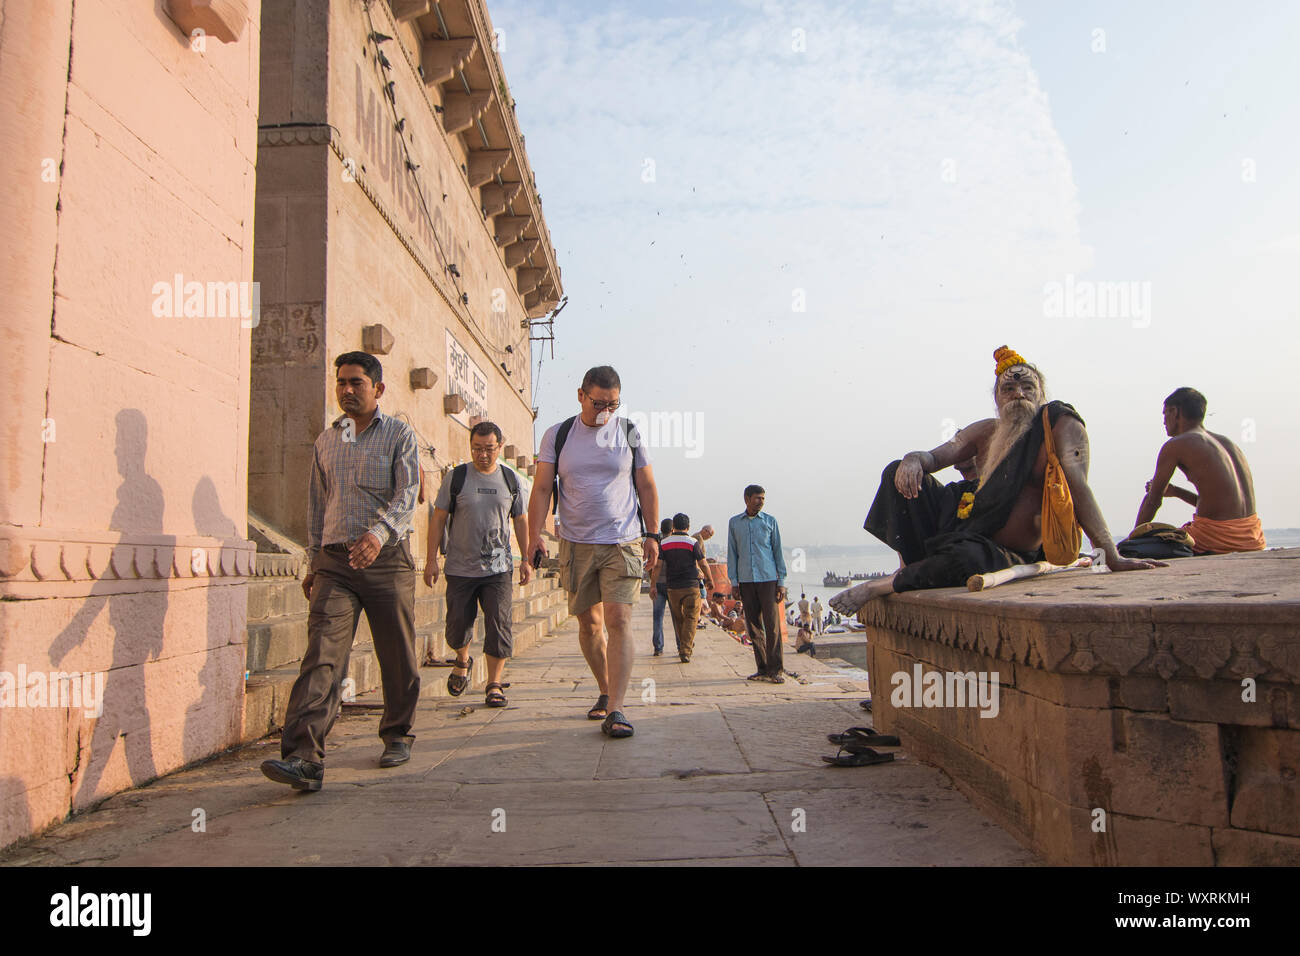 A morning street scene from Varanasi Stock Photo